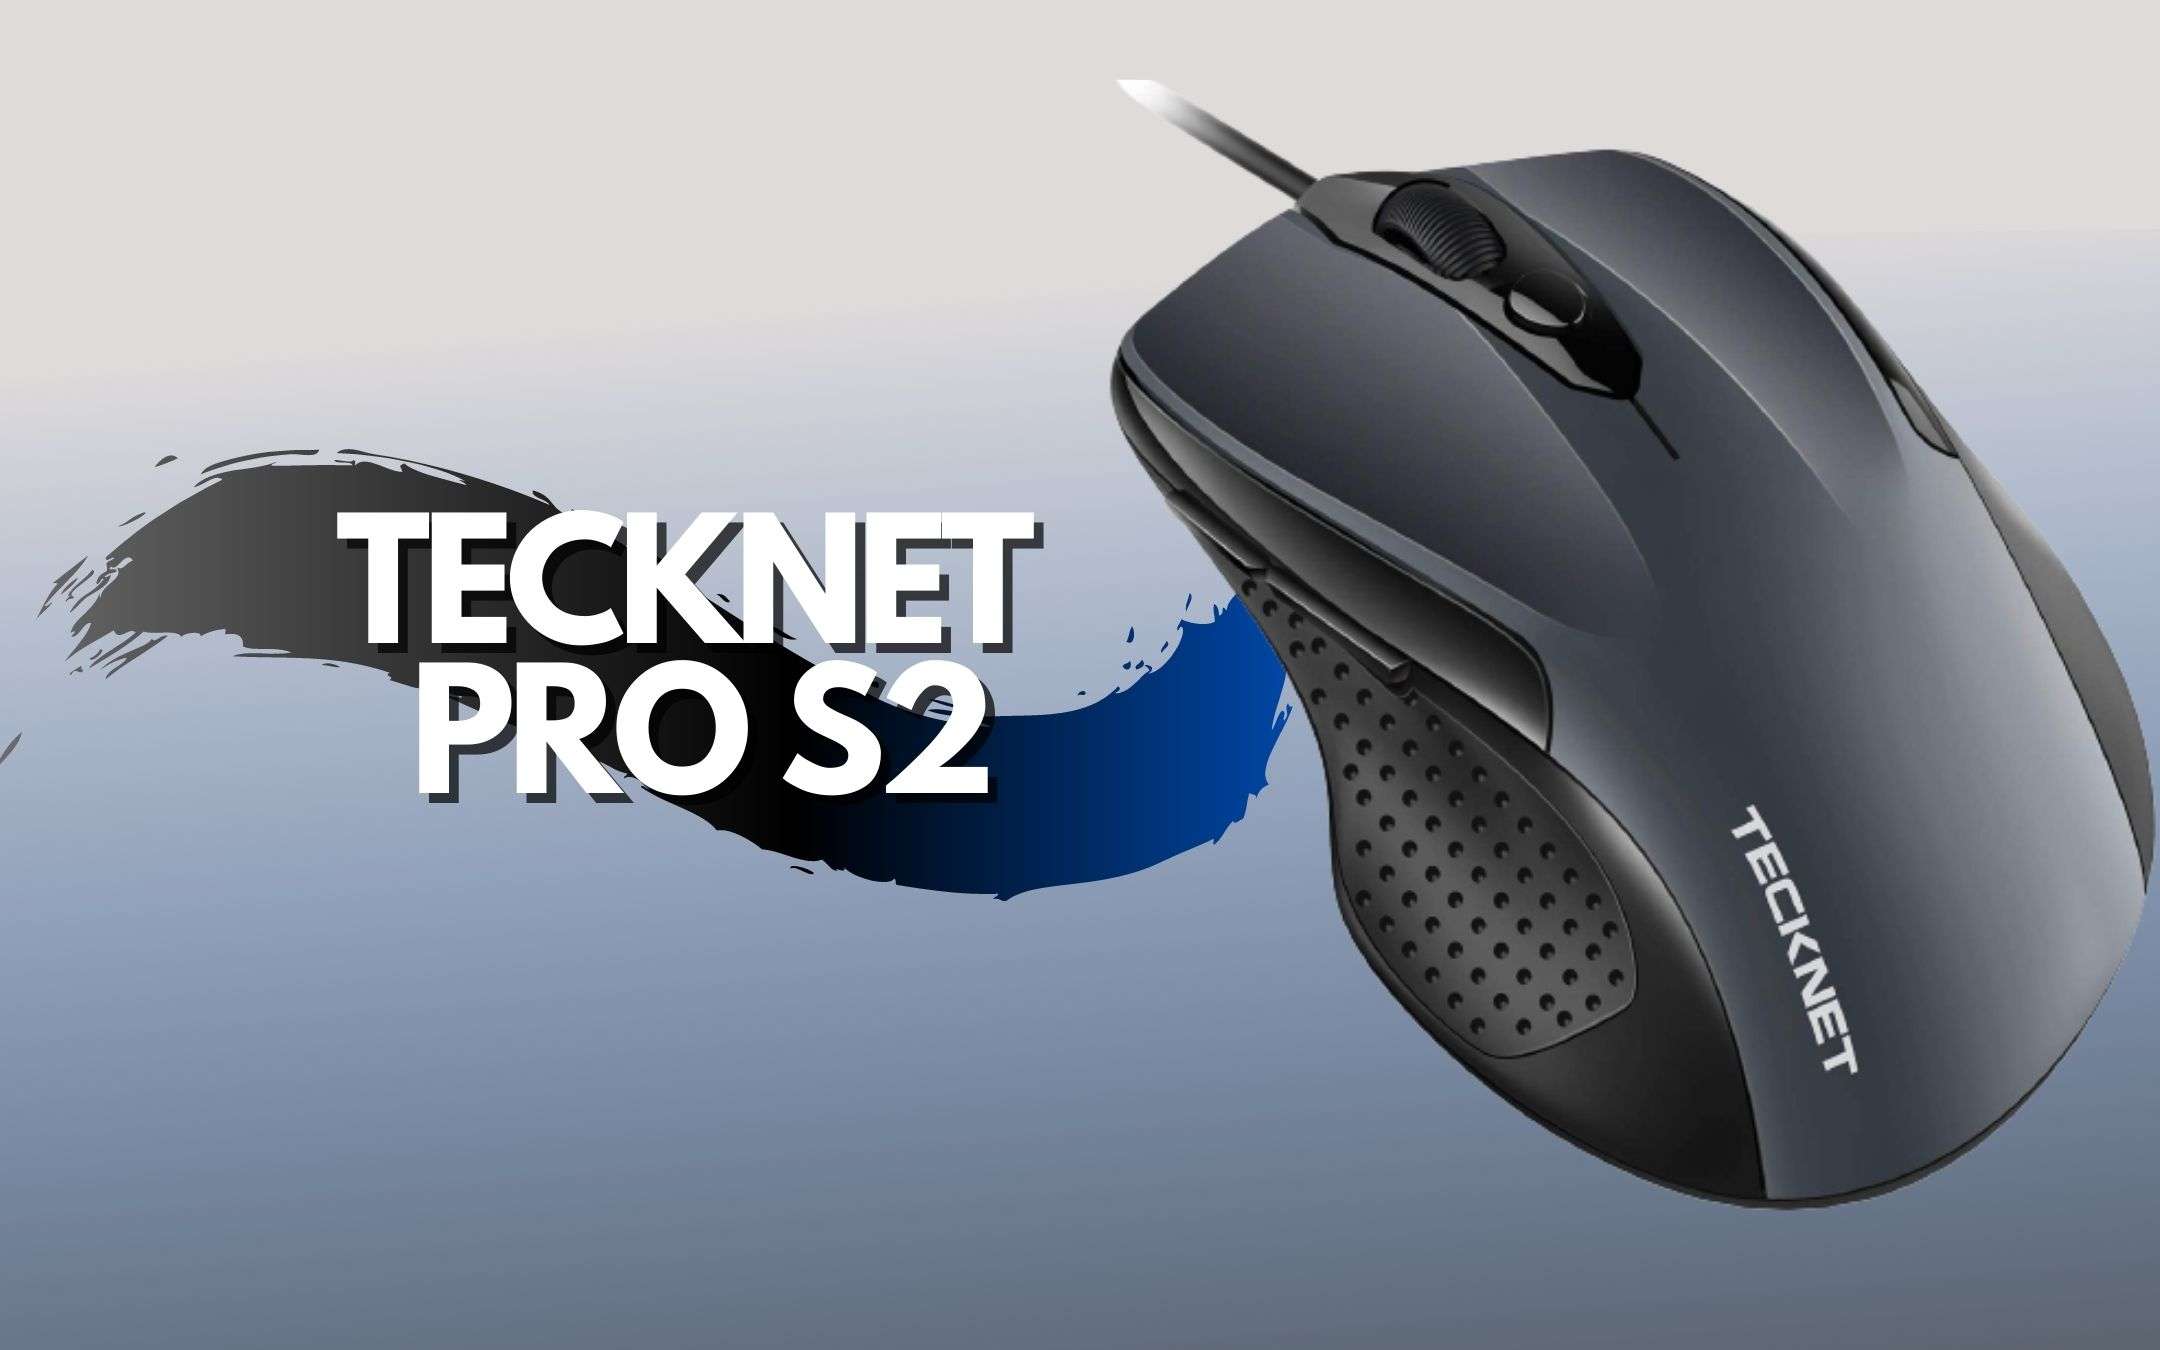 Tecknet Pro S2: mouse economico con 6 pulsanti